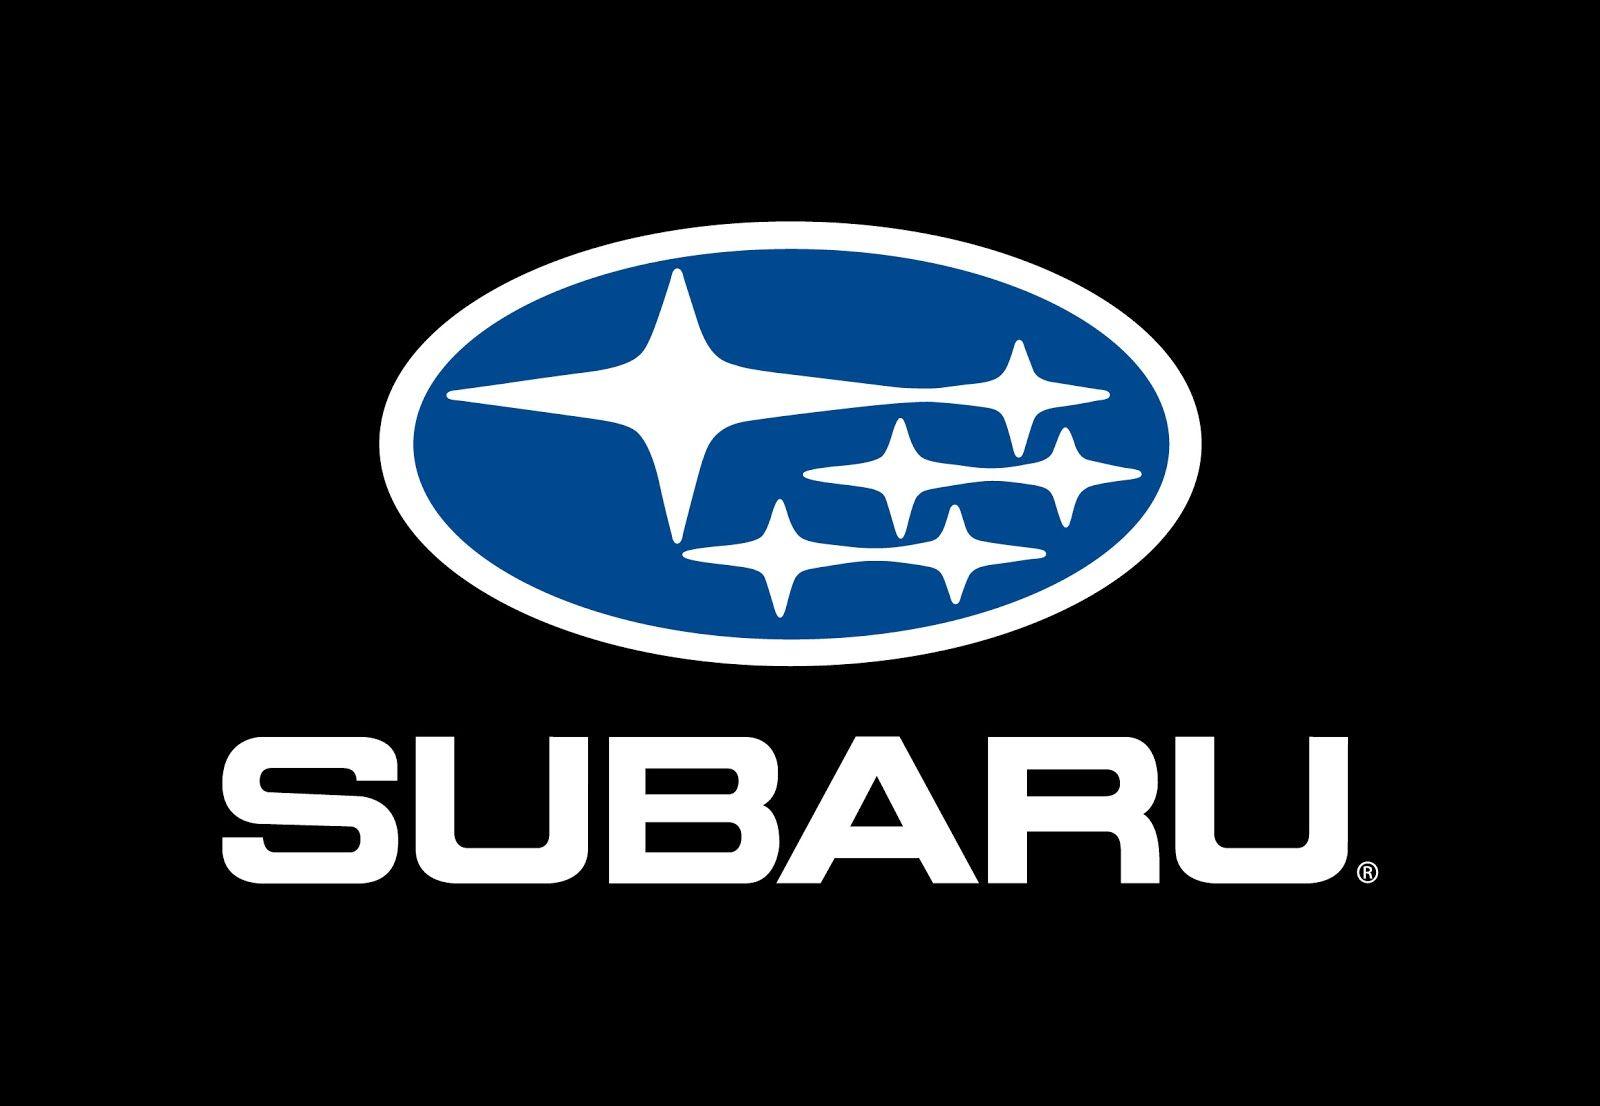 Red Subaru Logo - Subaru Logo, Subaru Car Symbol Meaning and History | Car Brand Names.com